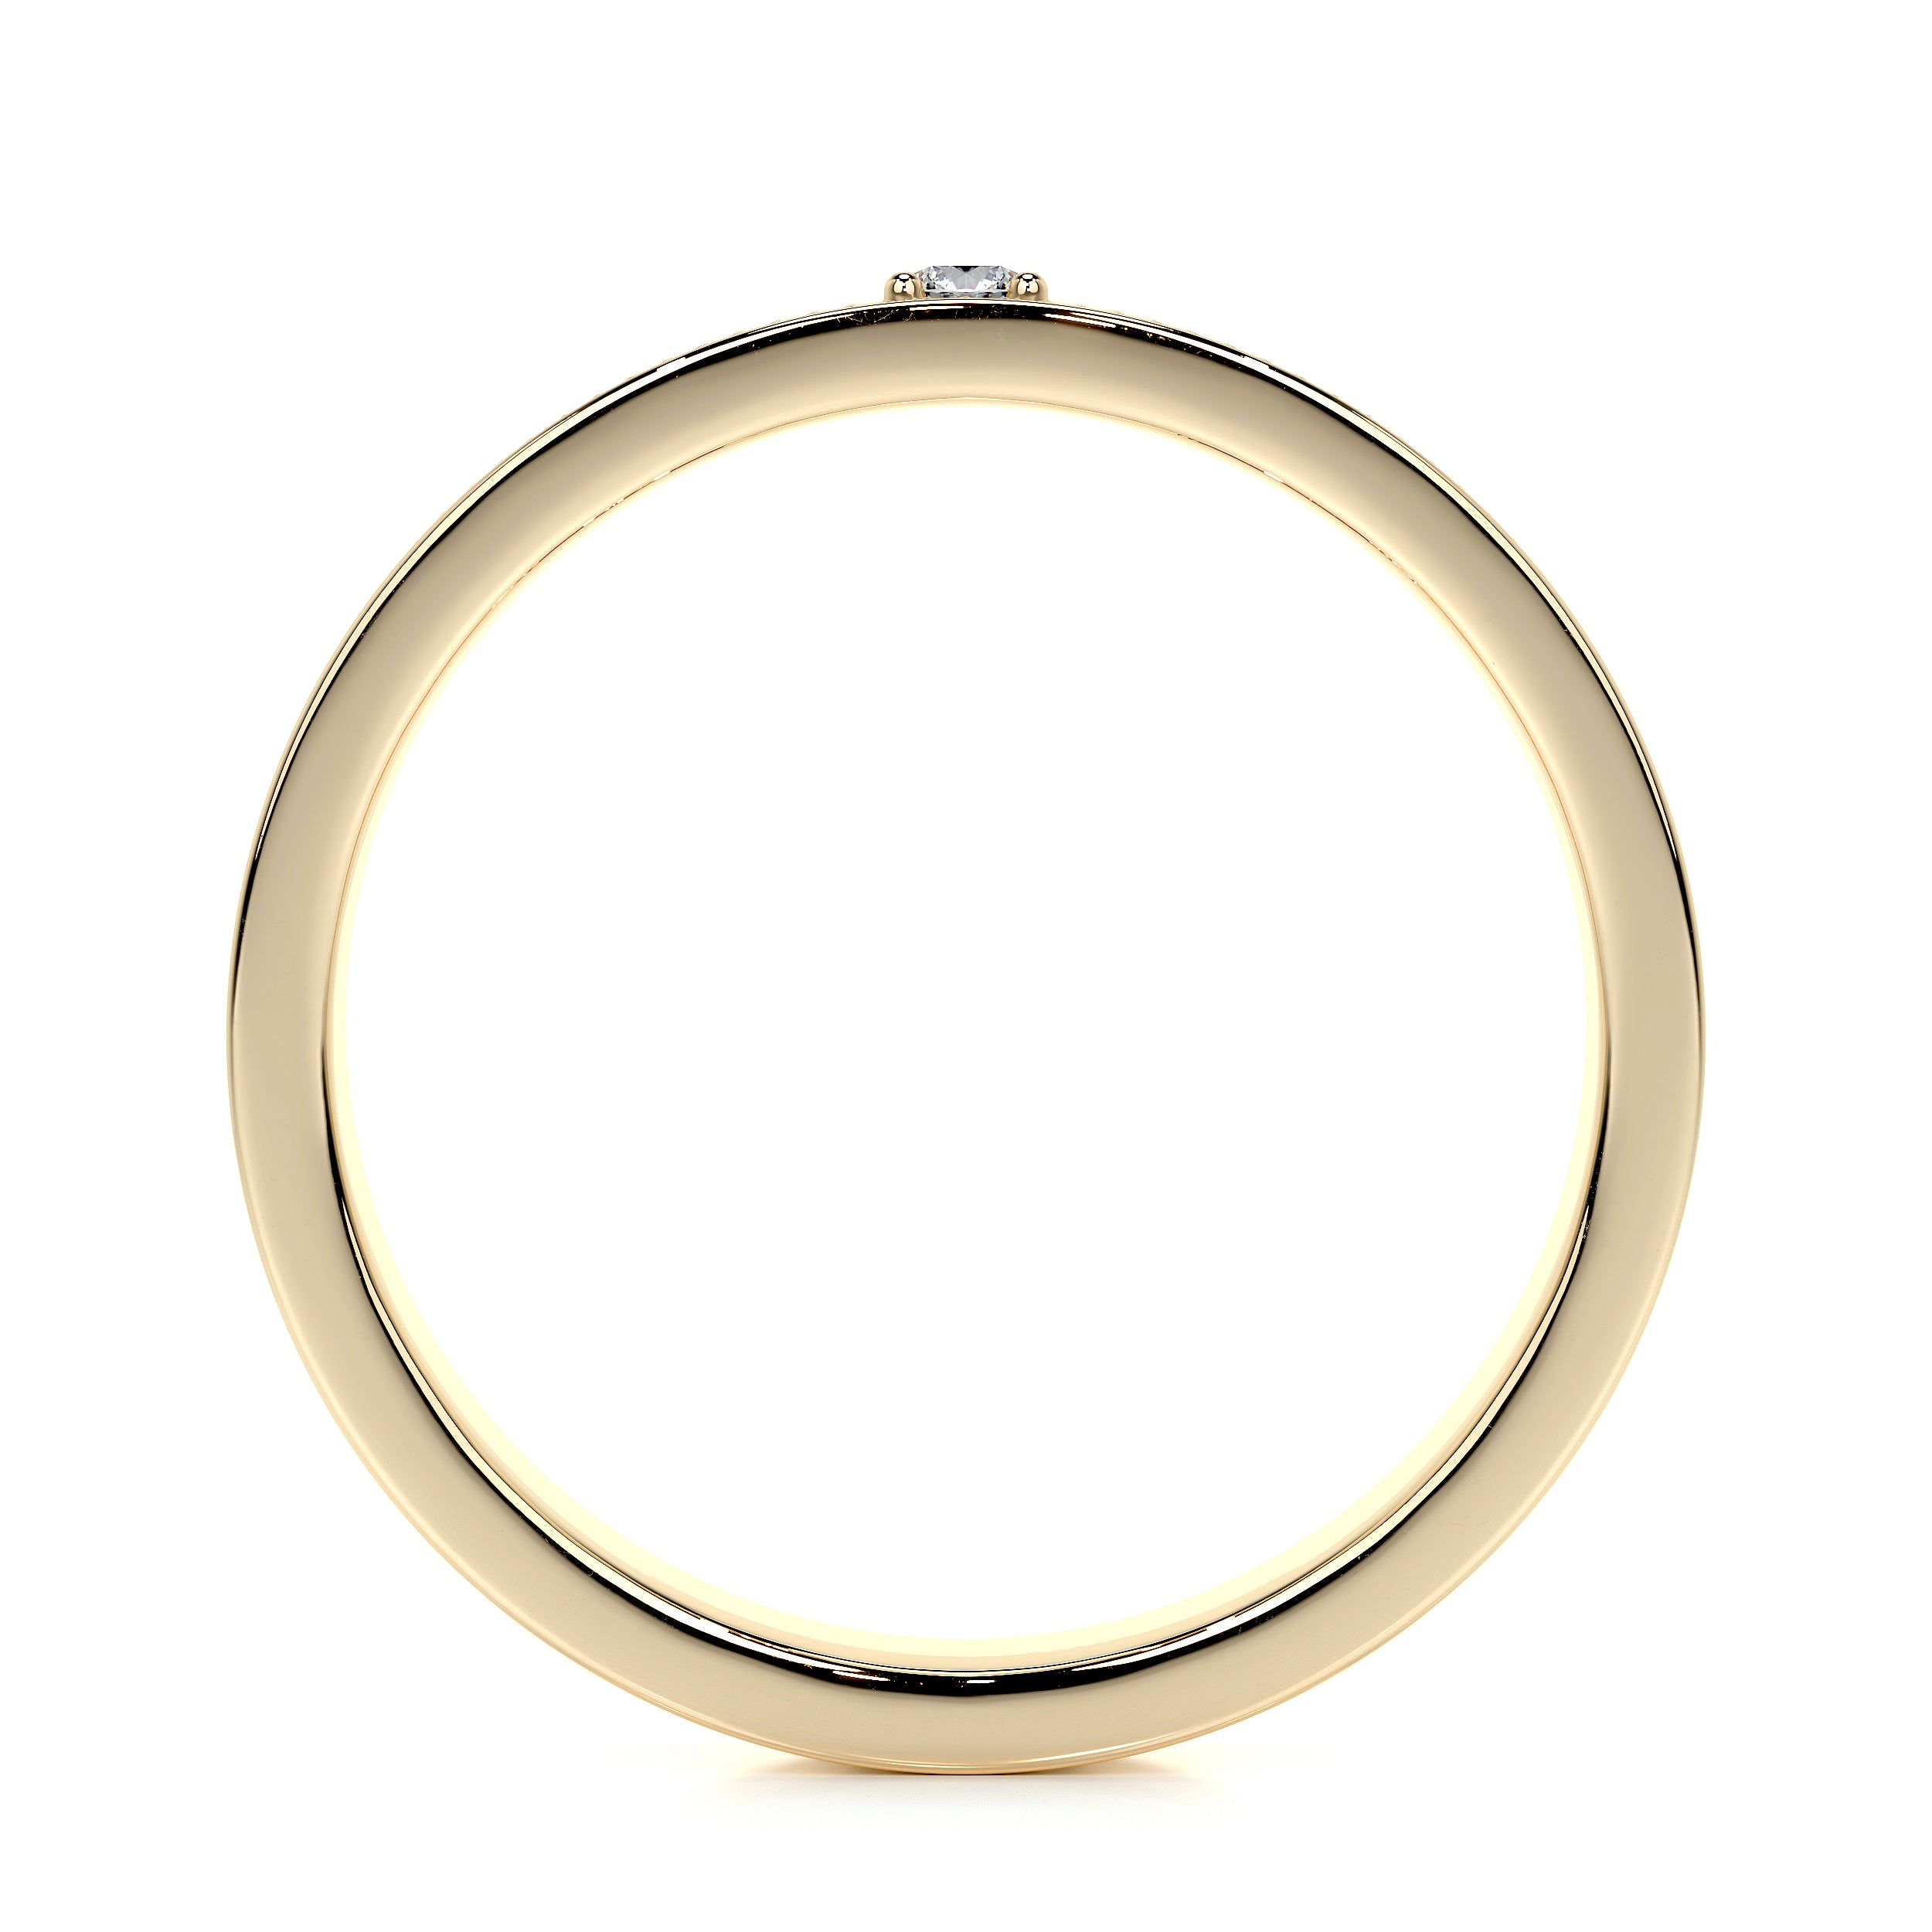 Sherry Lab Grown Diamond Wedding Ring   (0.02 Carat) -18K Yellow Gold